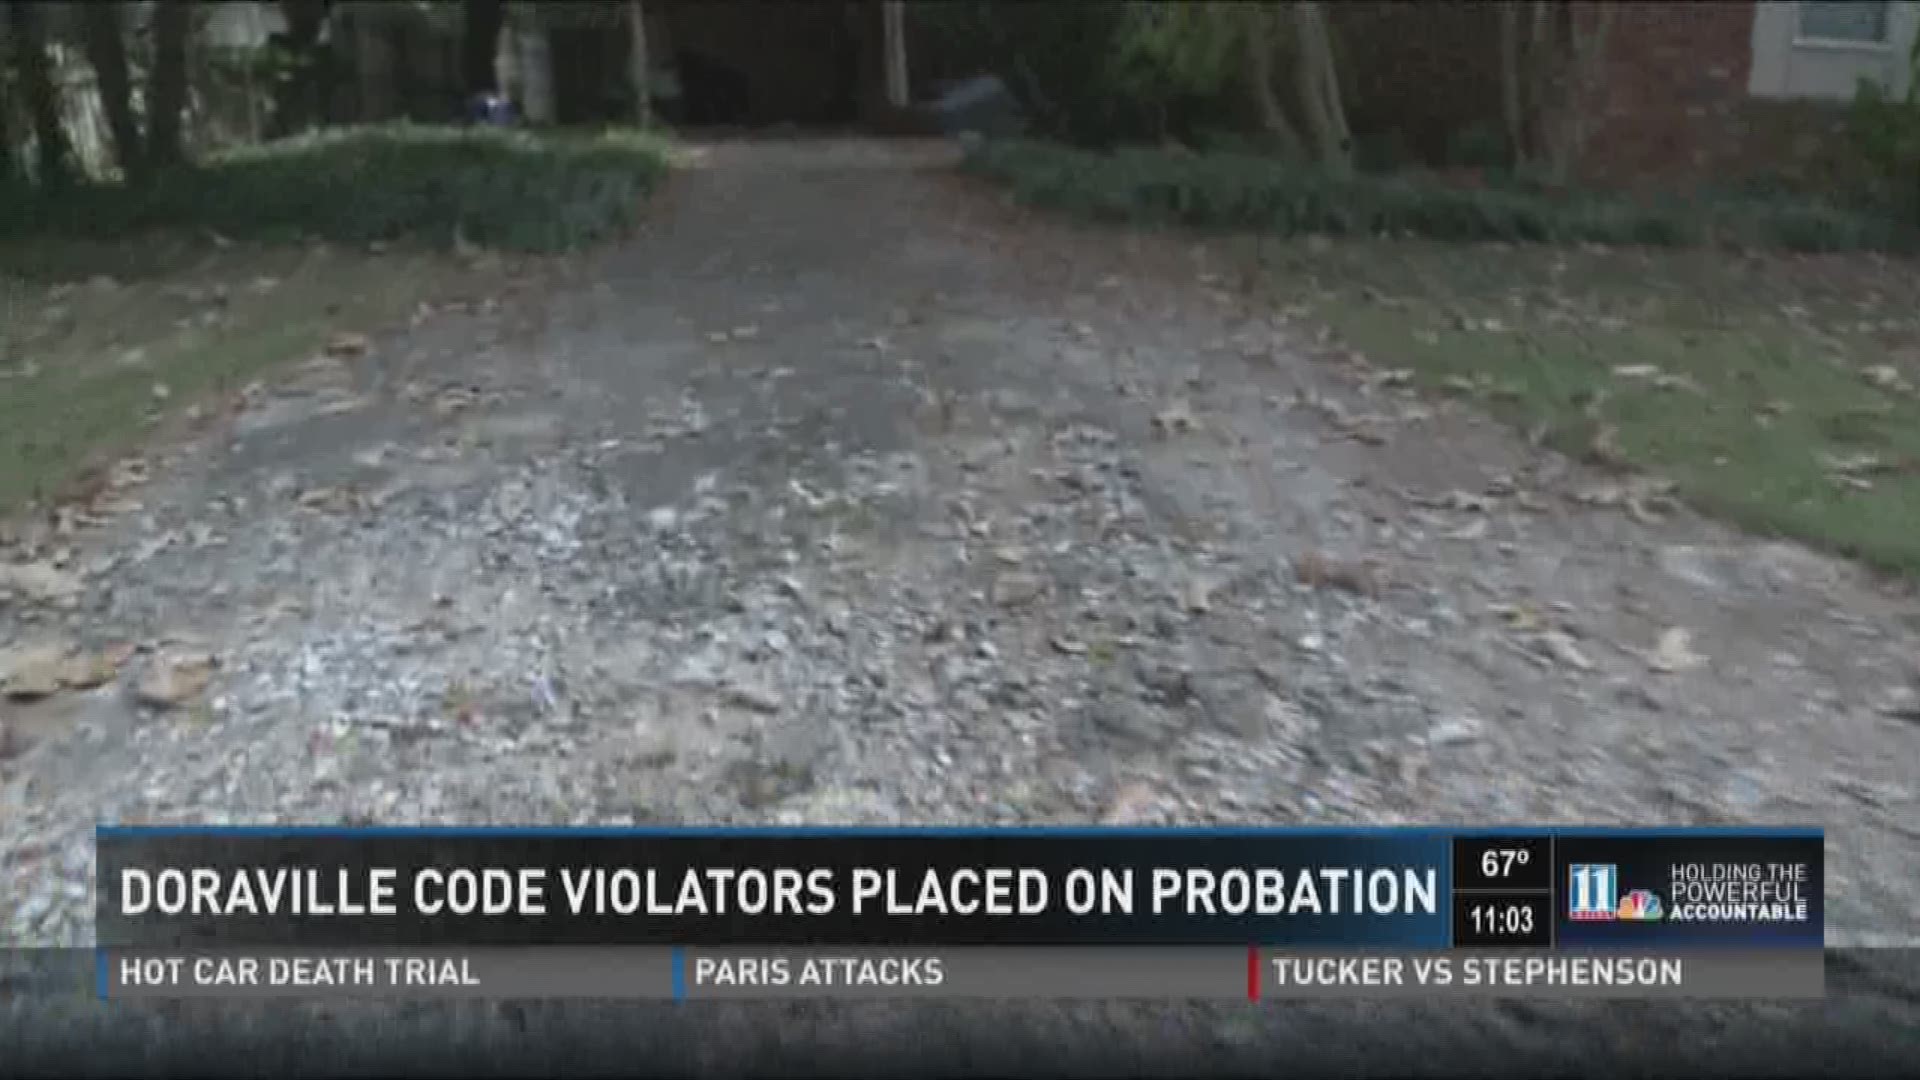 Doraville code violators placed on probation